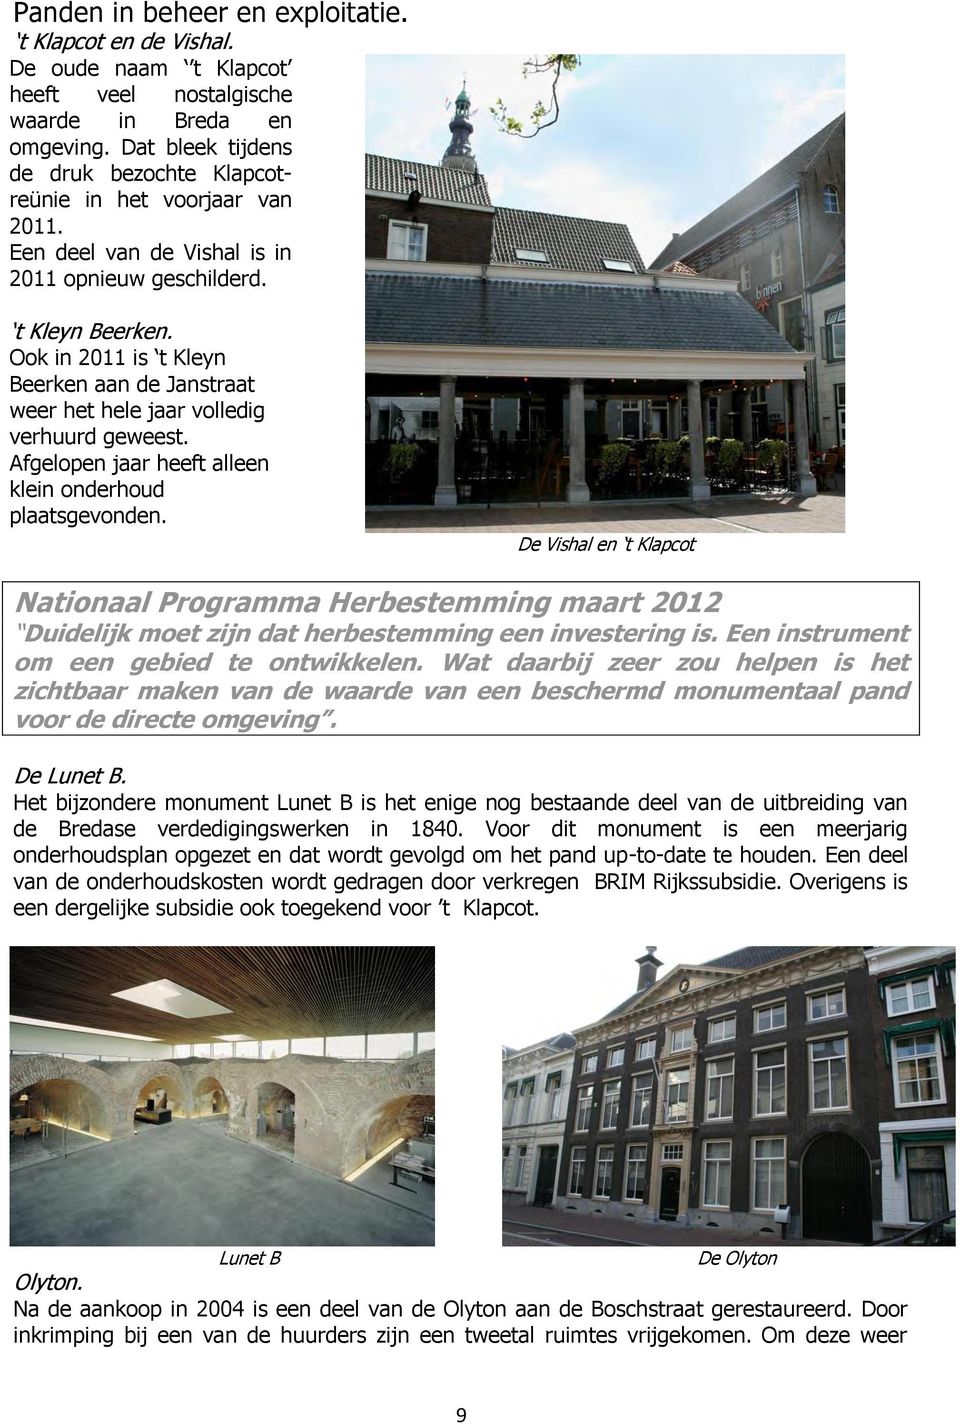 Ook in 2011 is t Kleyn Beerken aan de Janstraat weer het hele jaar volledig verhuurd geweest. Afgelopen jaar heeft alleen klein onderhoud plaatsgevonden.